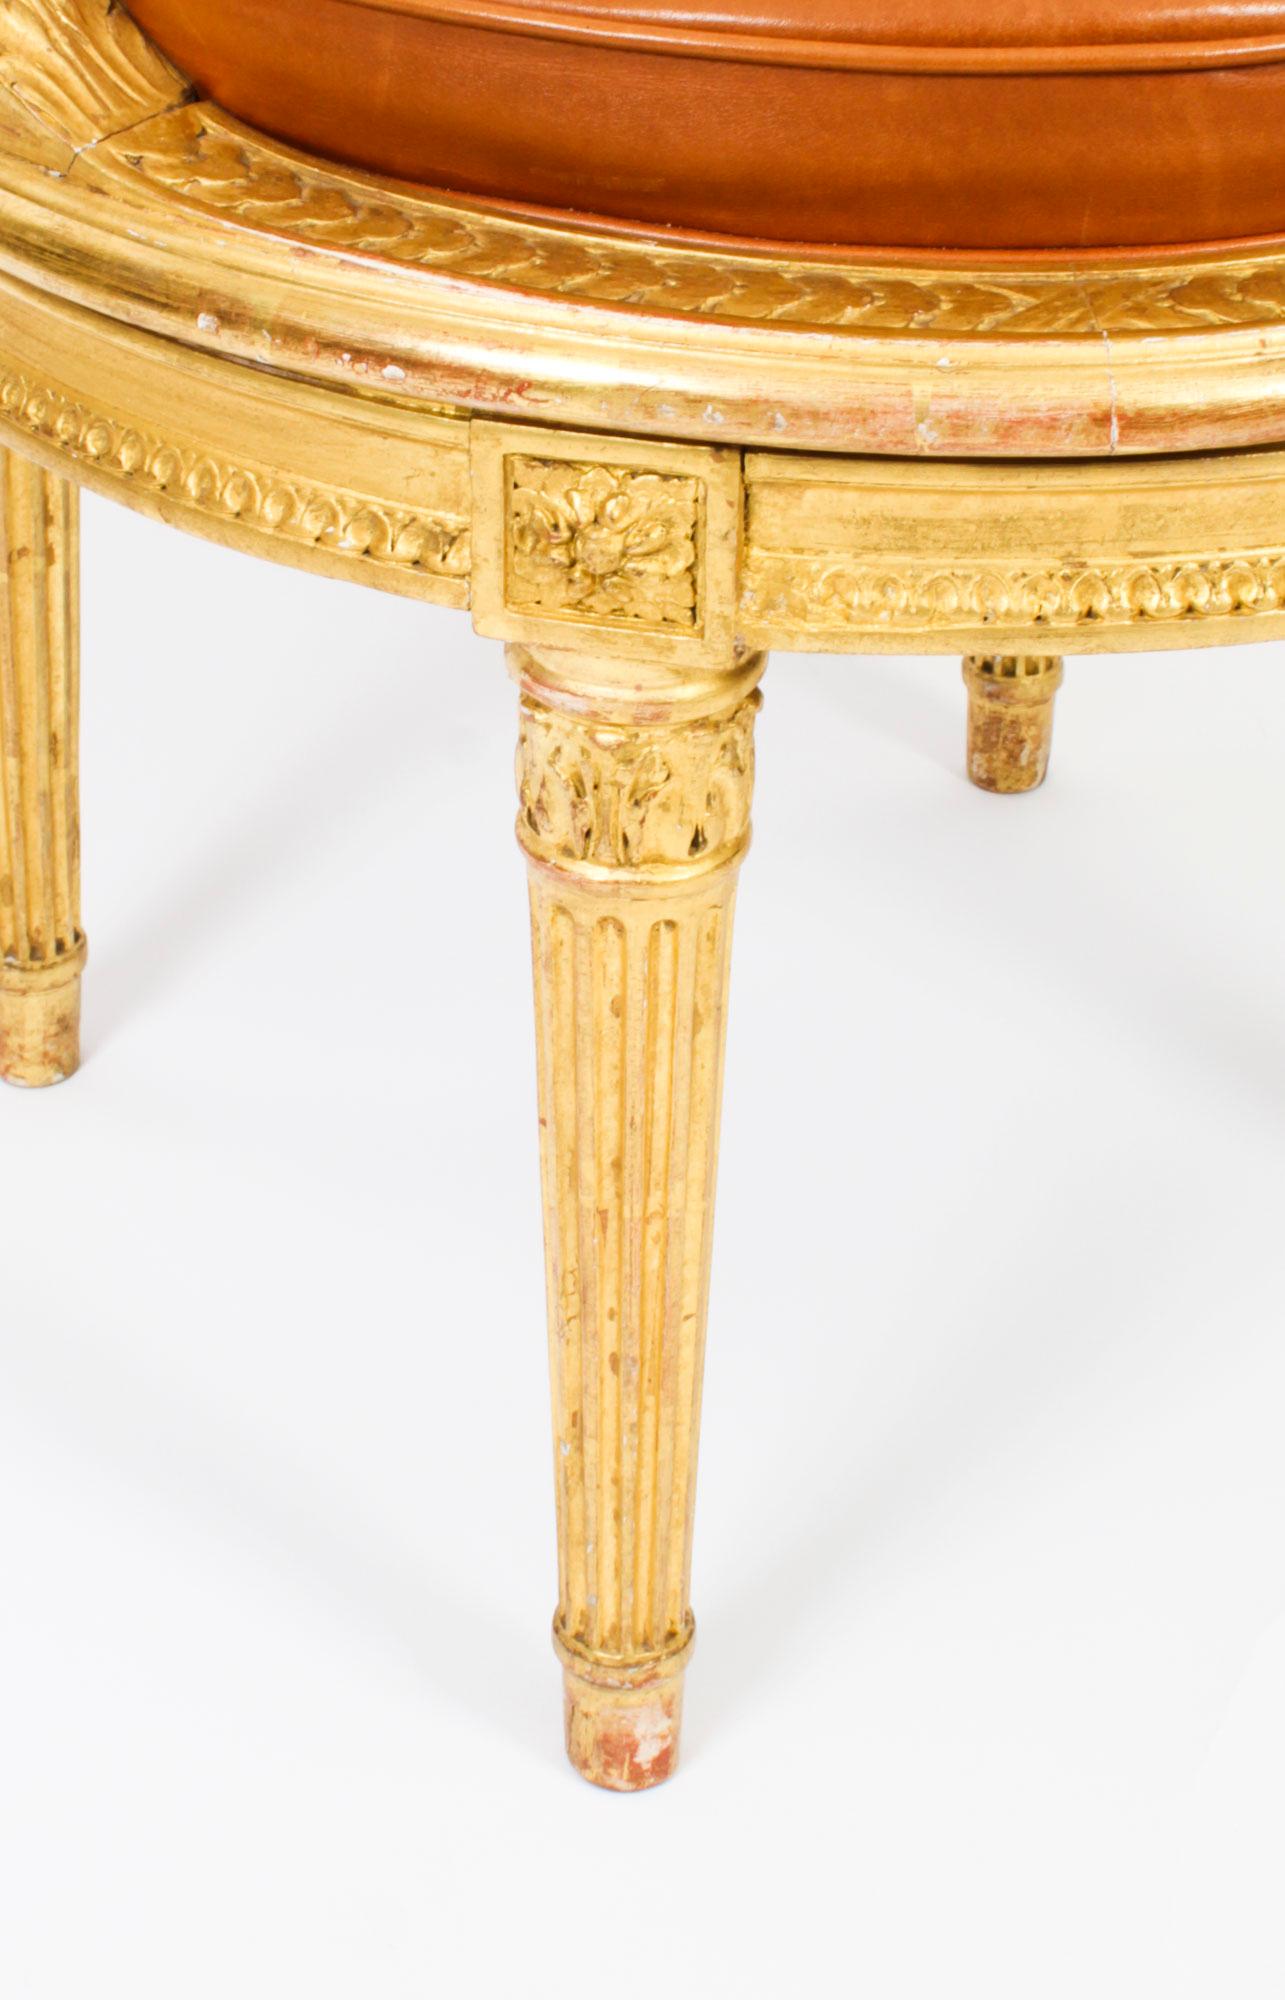 Antique French Louis Revival Revolving Fauteuil de Bureau Desk Chair 19th C. 3